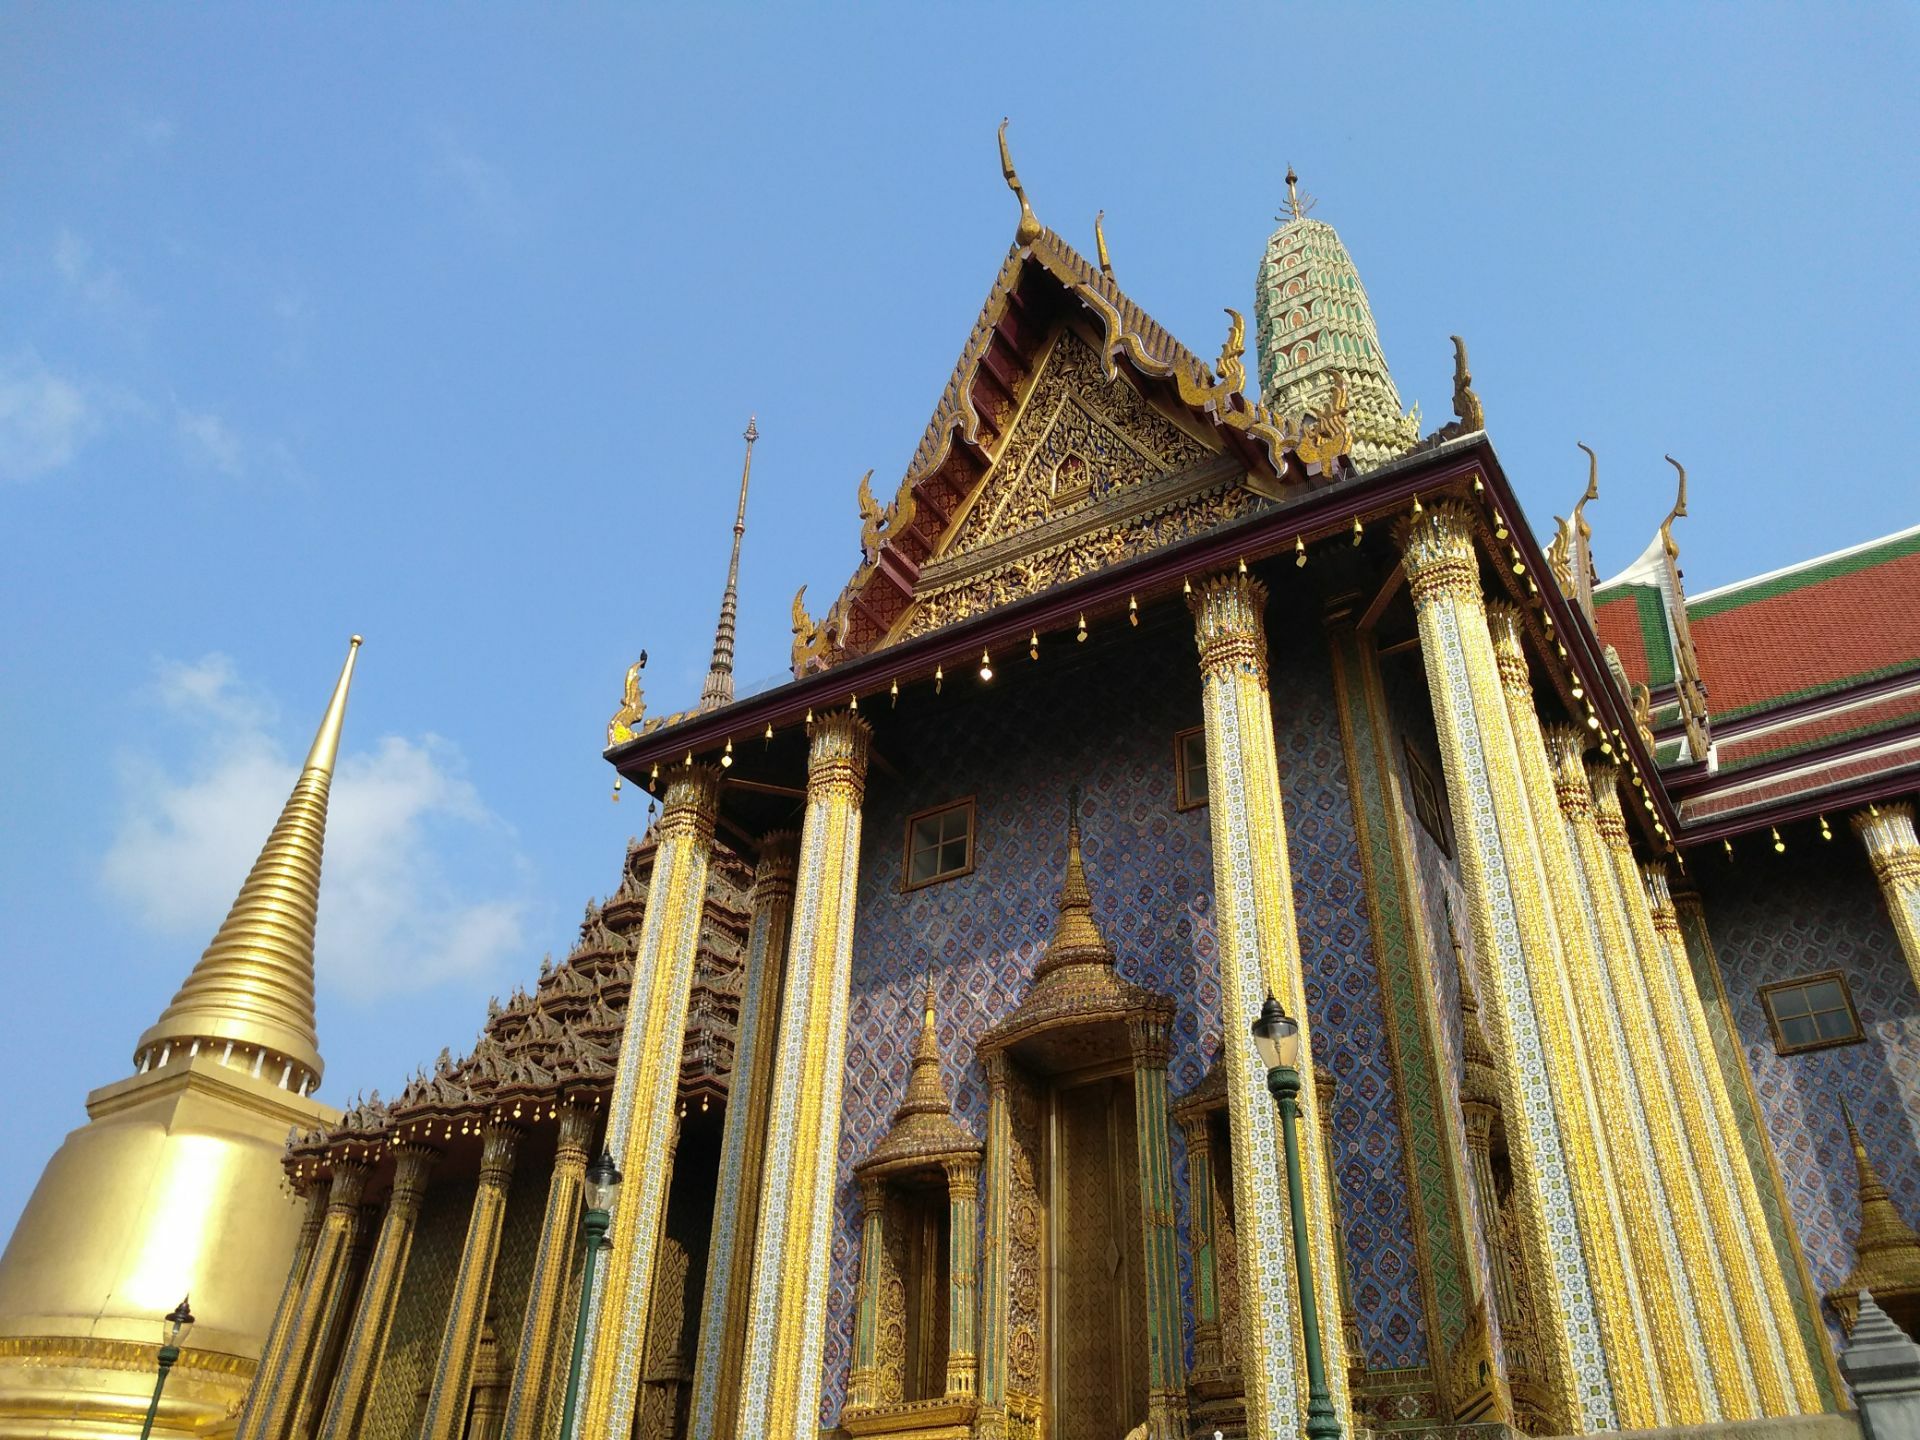 曼谷玉佛寺，泰国曼谷 免费图片 - Public Domain Pictures